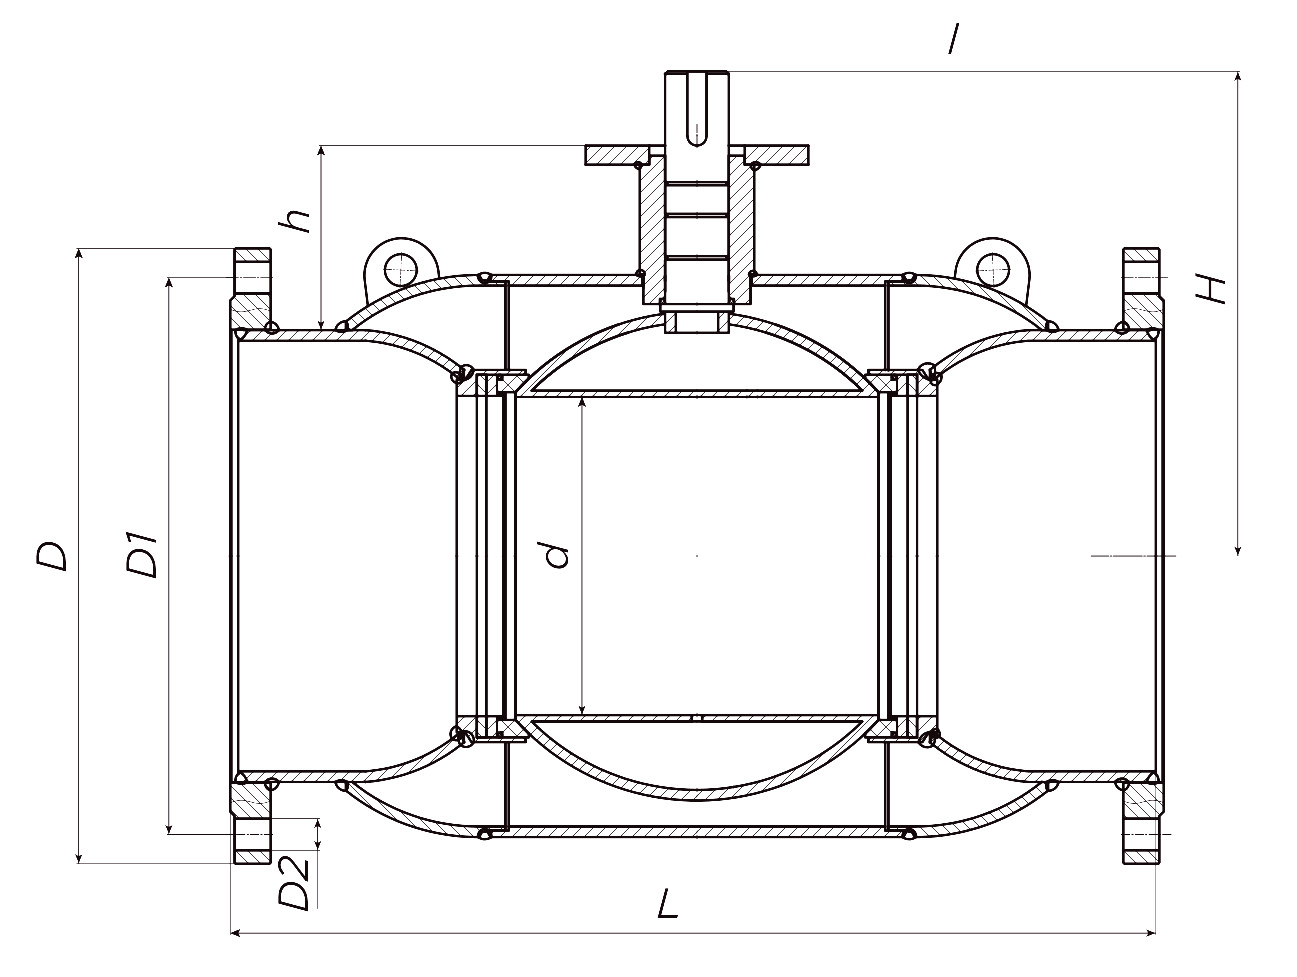 Кран шаровой ALSO КШ.Ф.Р.400.16-01 Ду400 Ру16 стандартнопроходной, присоединение - фланцевое, корпус - сталь 20, уплотнение - PTFE, под редуктор/привод